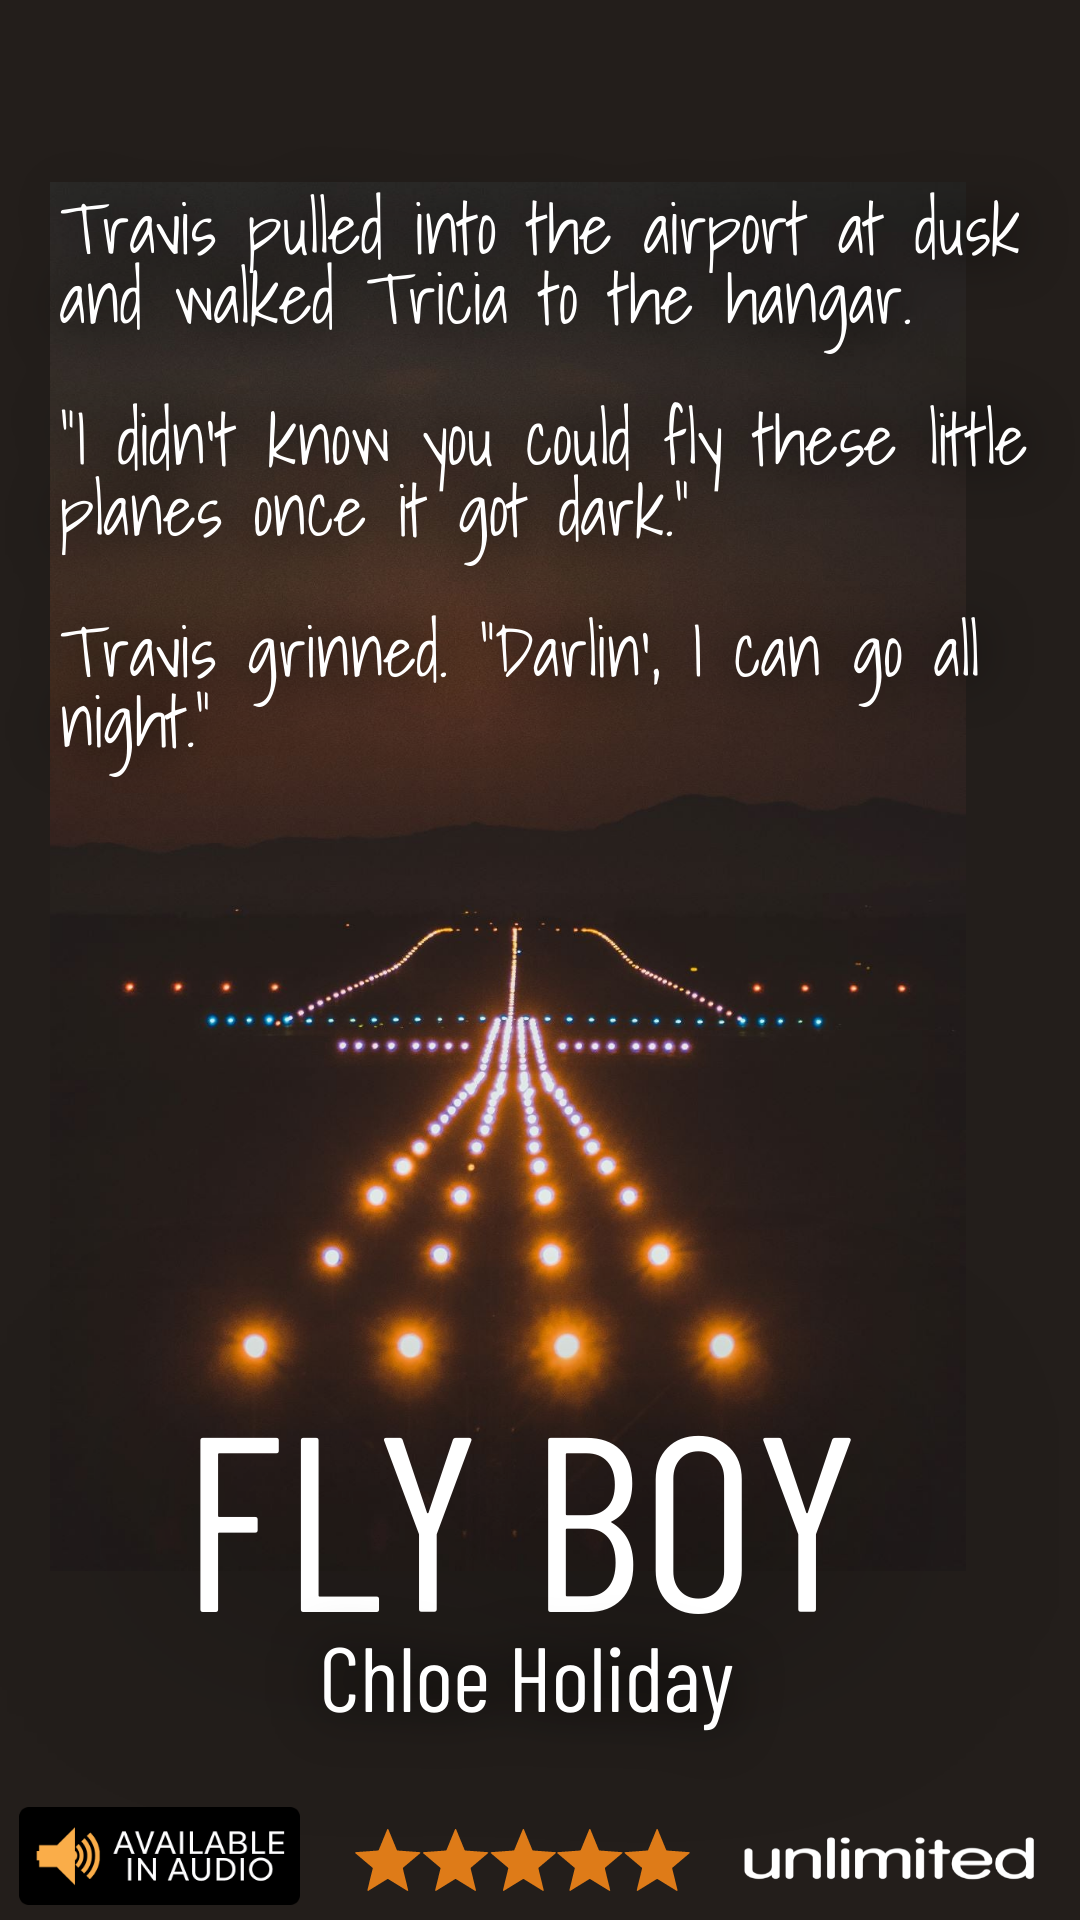 "Go all night": Flying Innuendos in Chloe Holiday's Fly Boy.